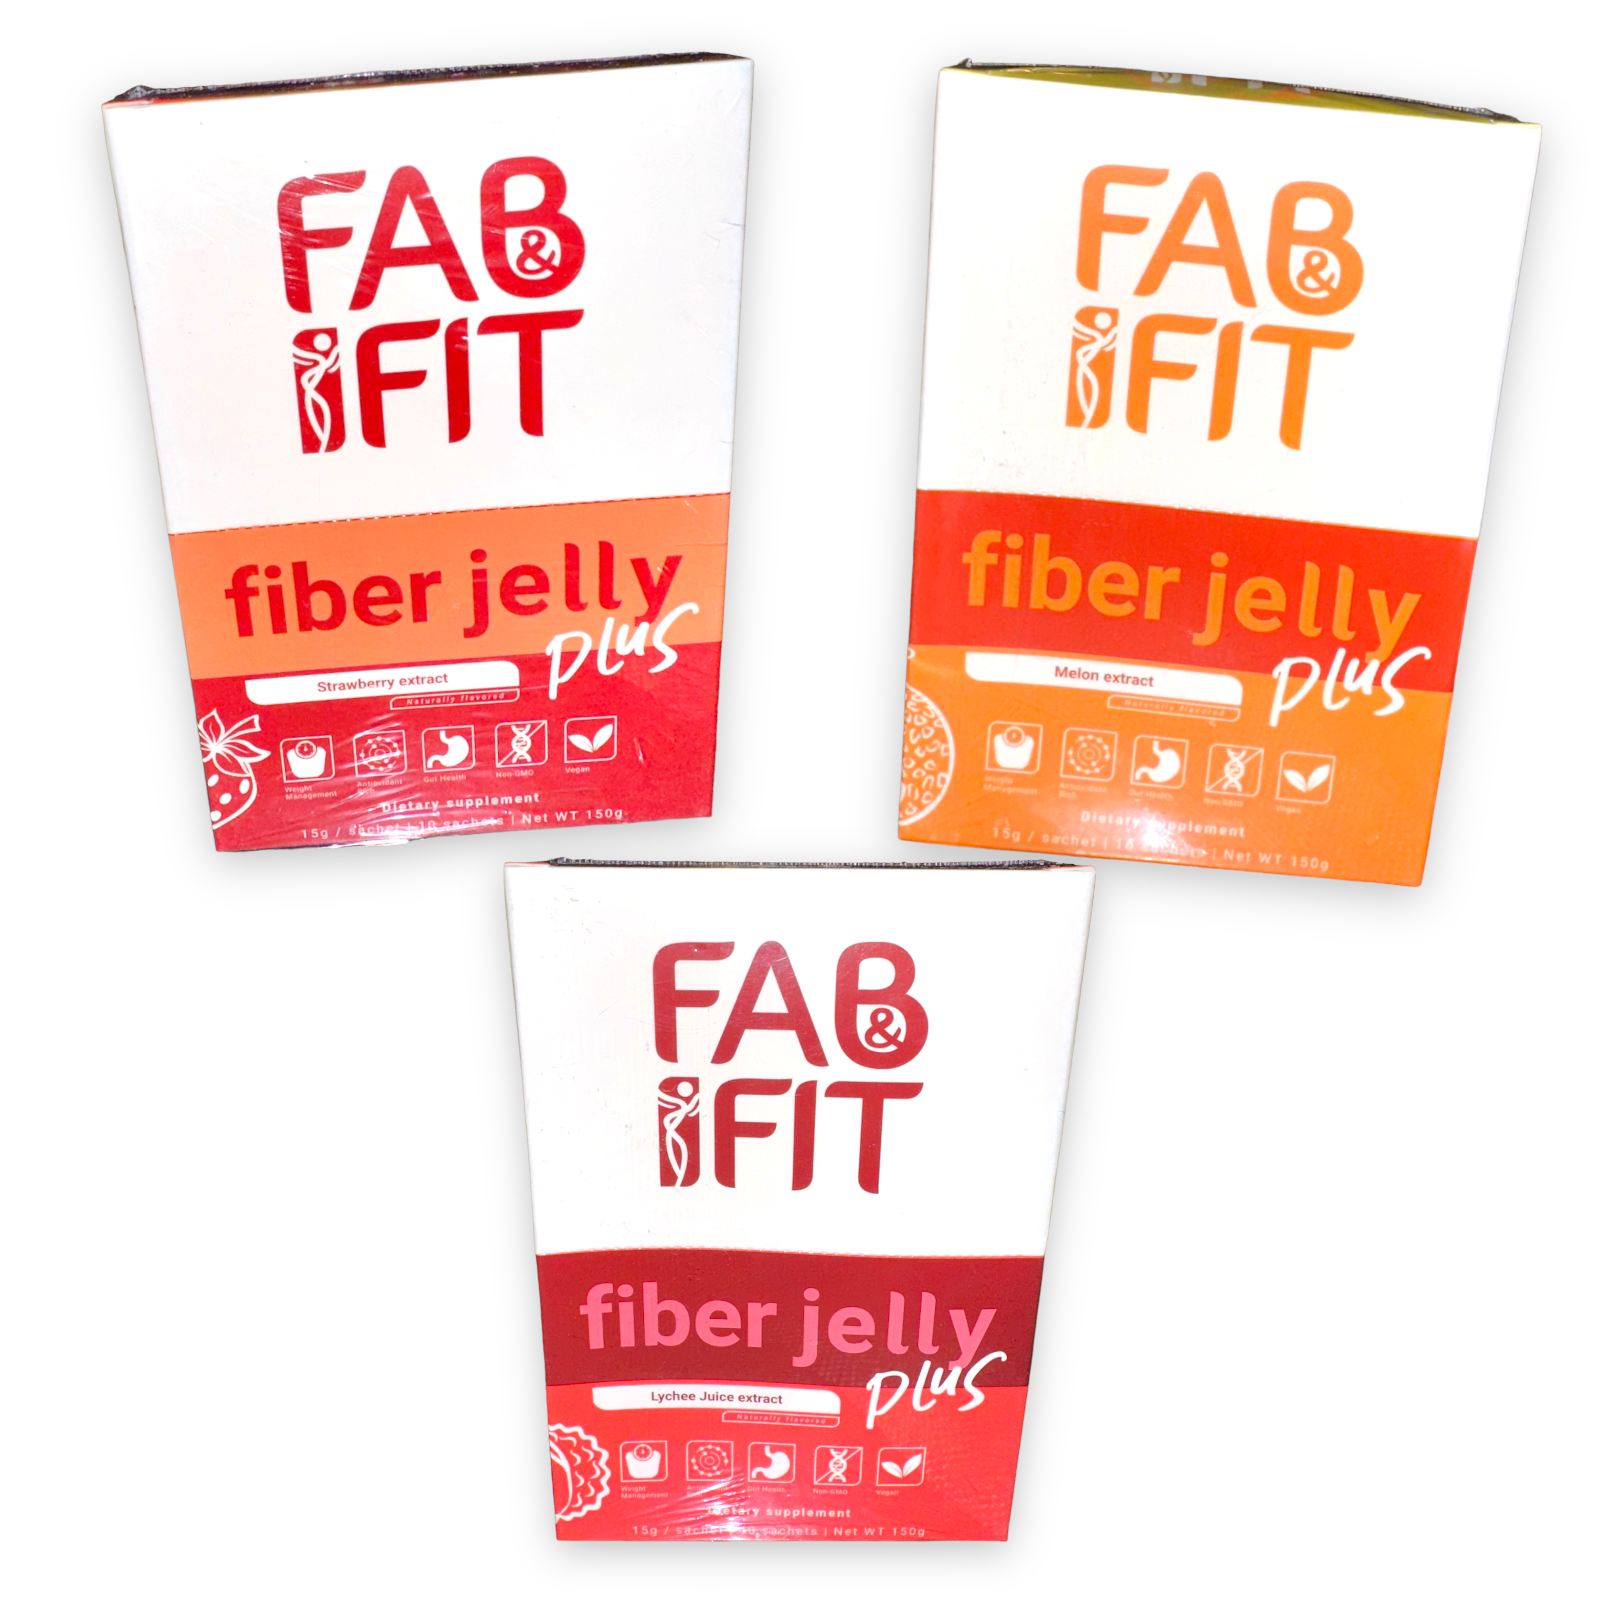 Fab & Fit Fiber Jelly Plus